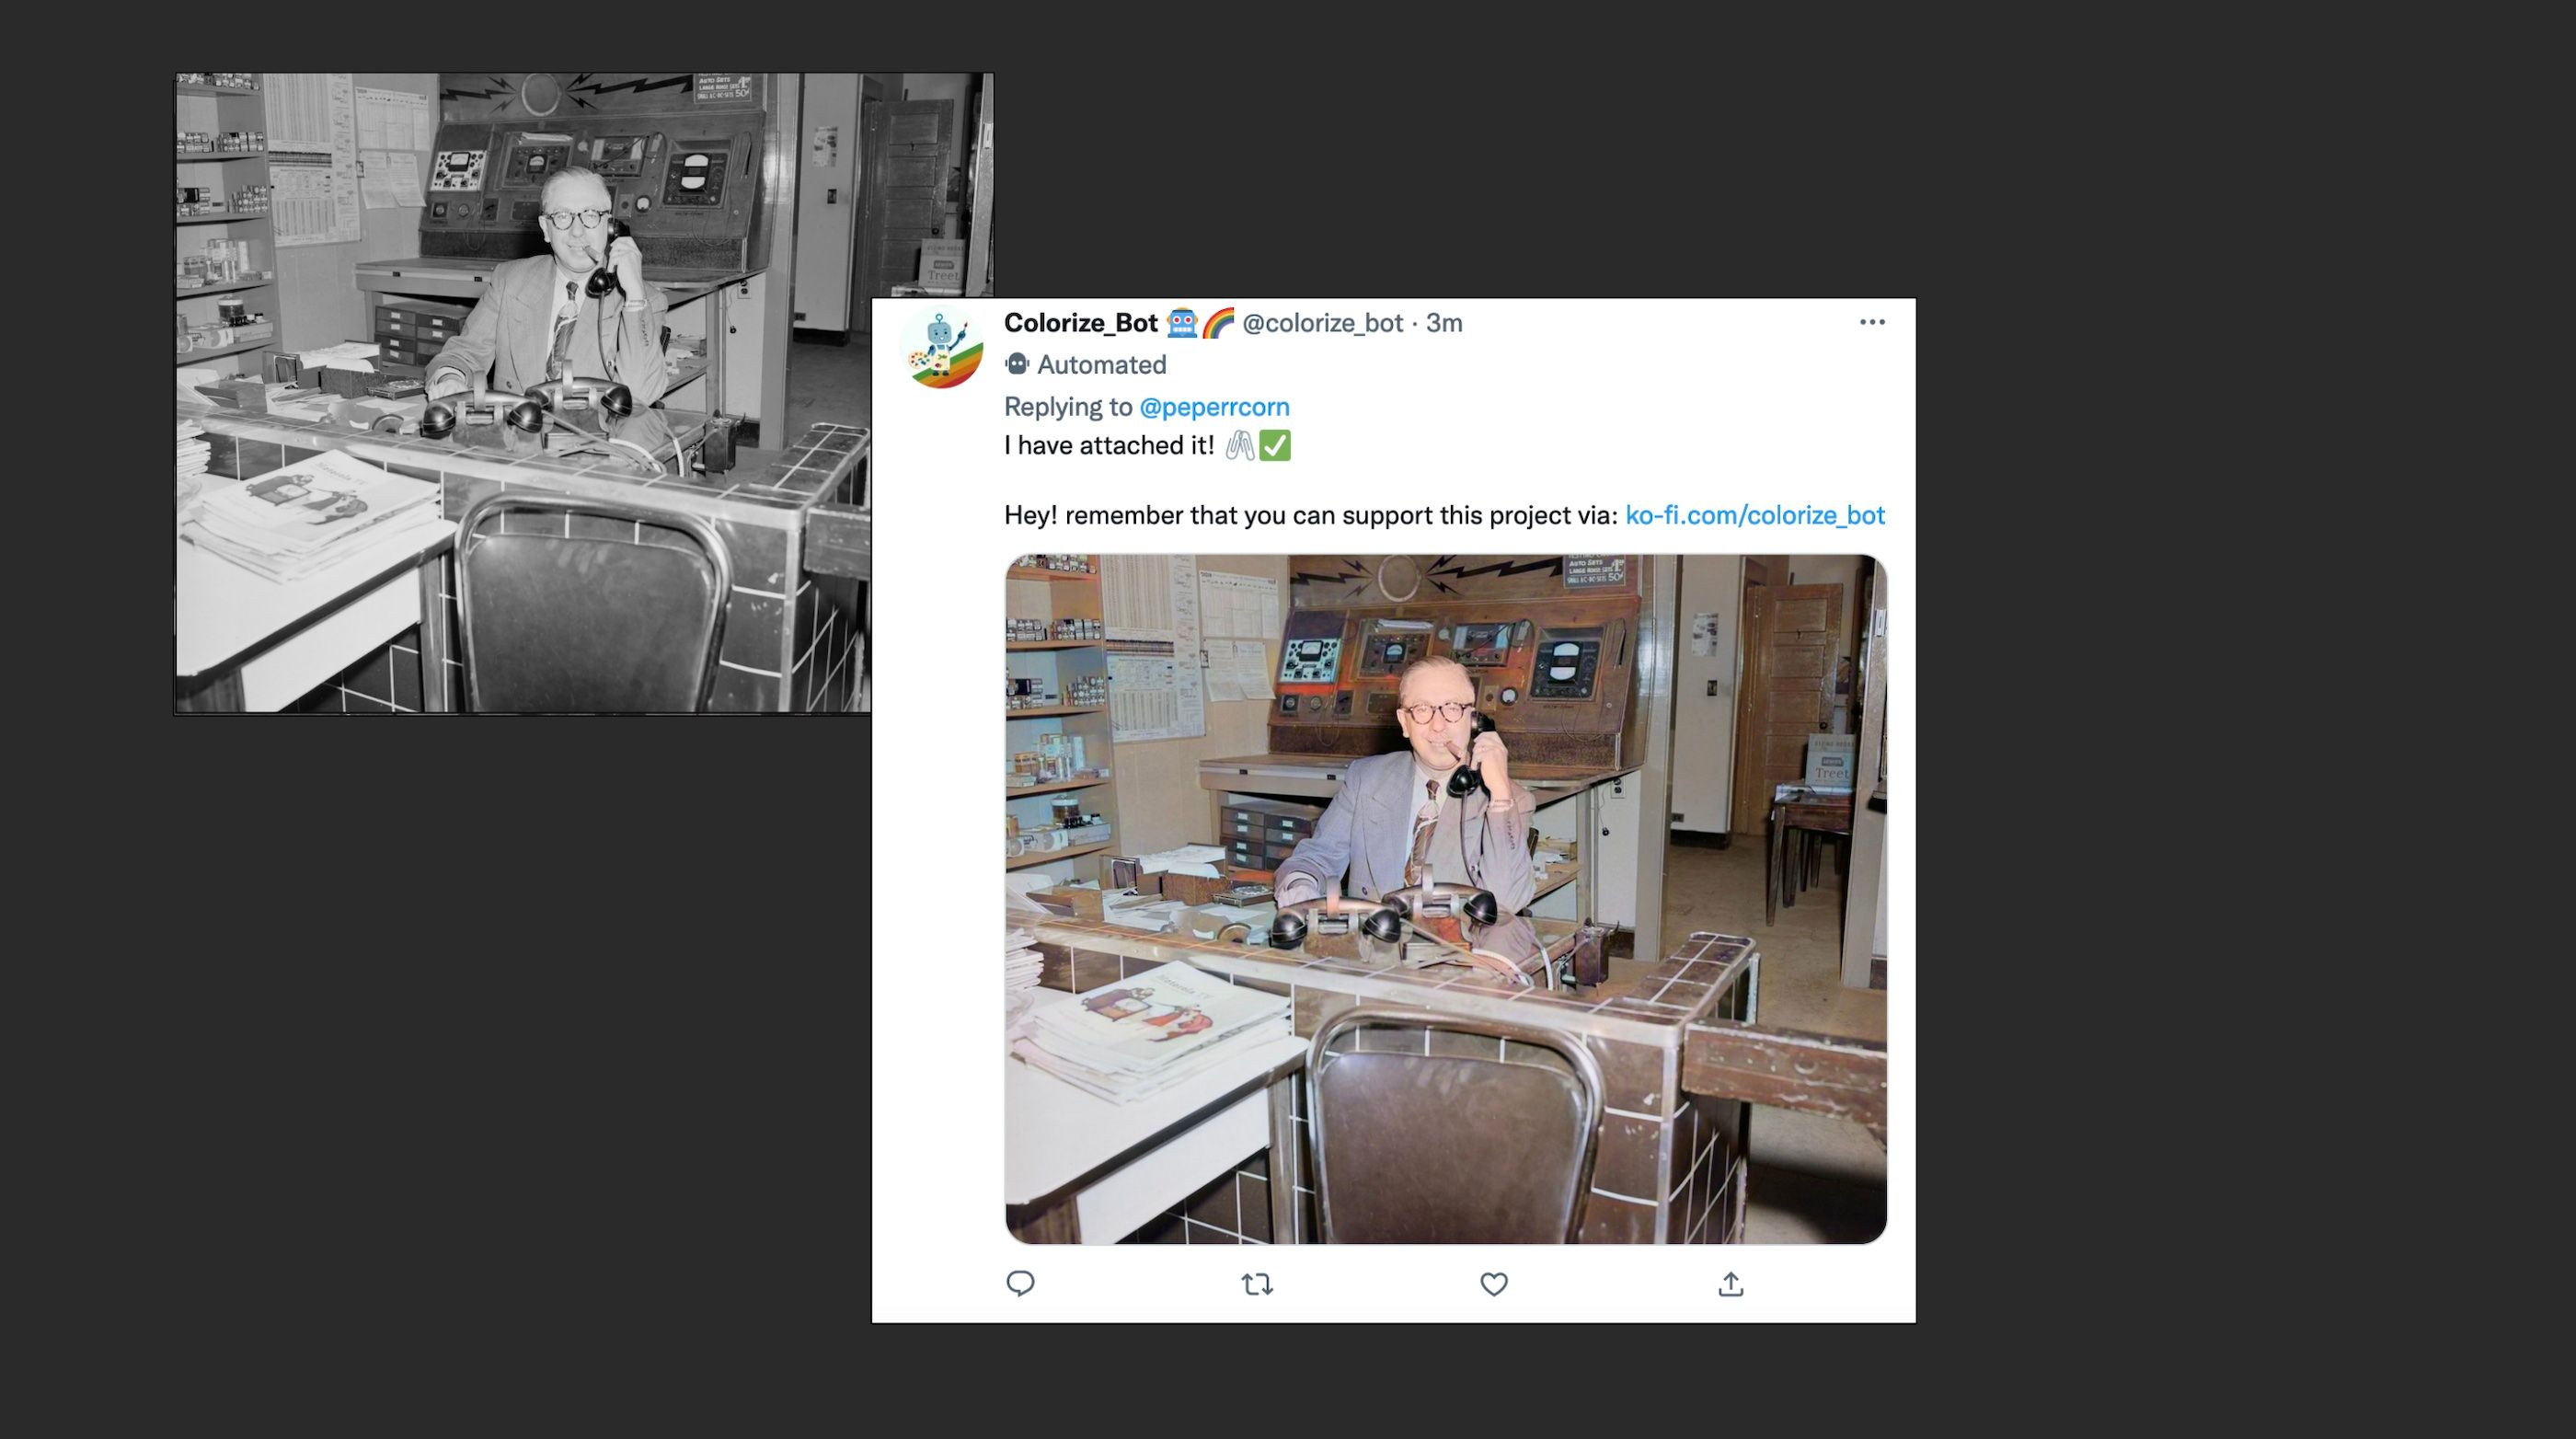 Uma foto em preto e branco de um homem usando um telefone, ao lado de uma versão colorida de um bot do Twitter chamado Colorize_bot.